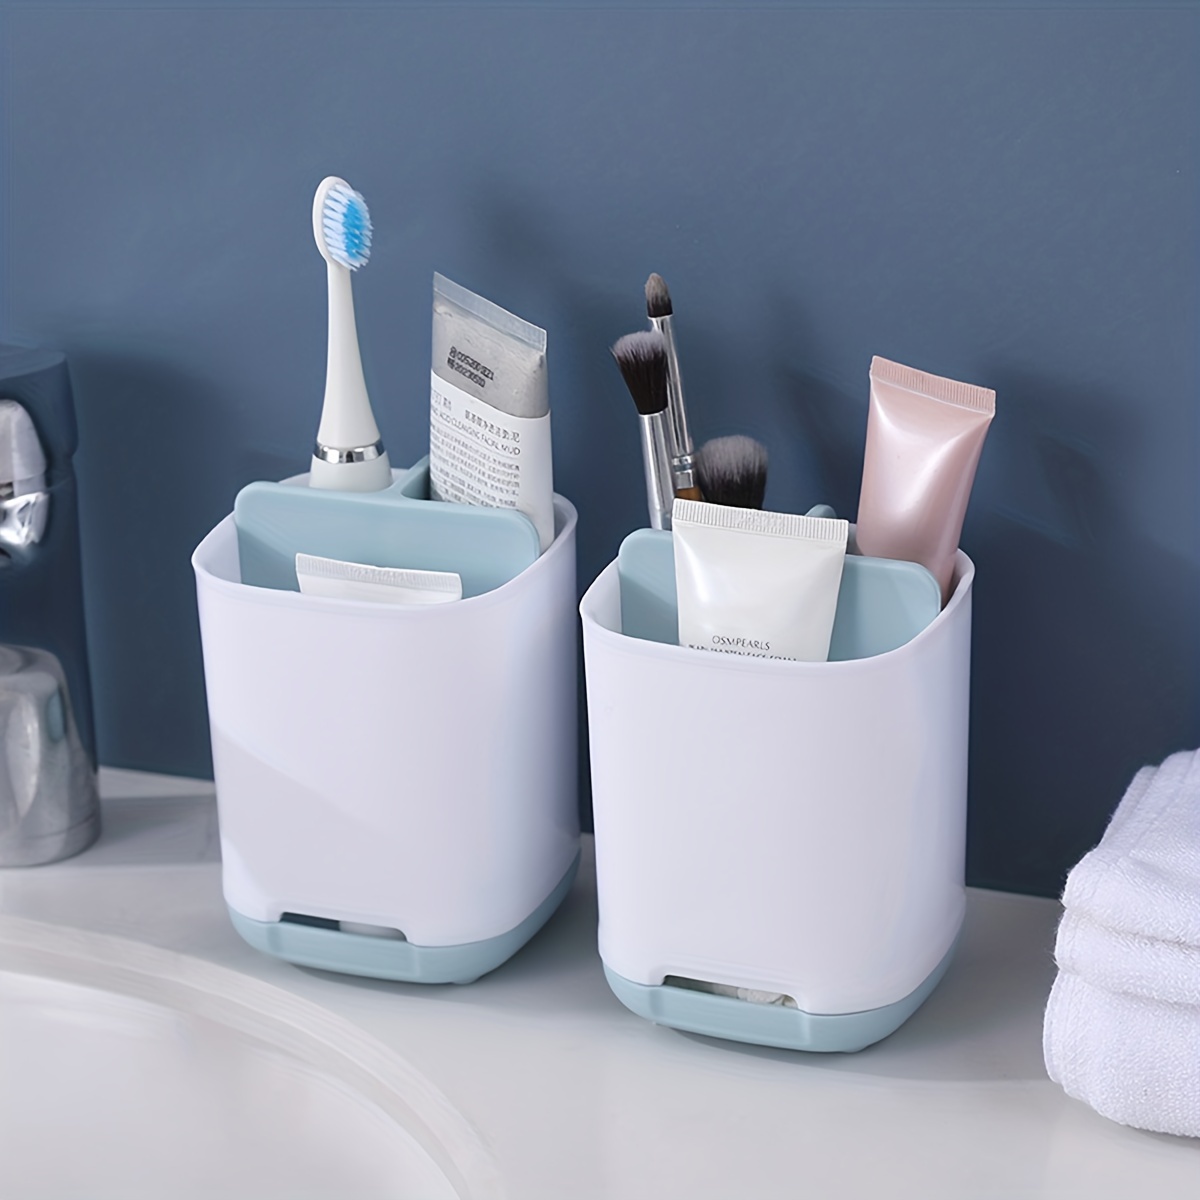 DOLED Soporte eléctrico para cepillo de dientes para baño: soporte  organizador de pasta de dientes y cepillo de dientes de mármol blanco con 3